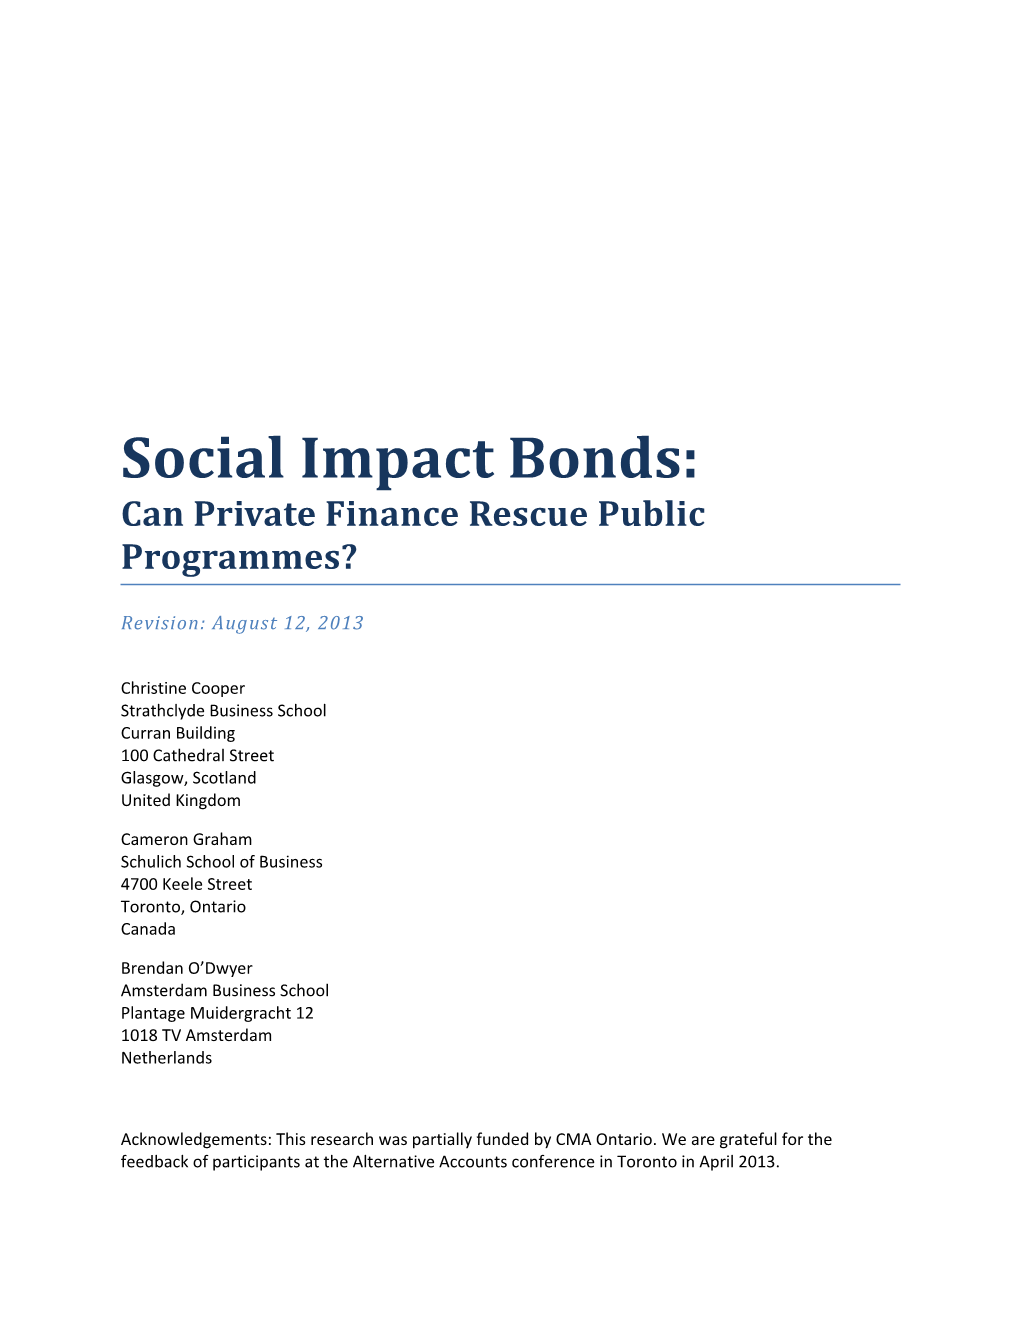 Social Impact Bonds: Can Private Finance Rescue Public Programmes?